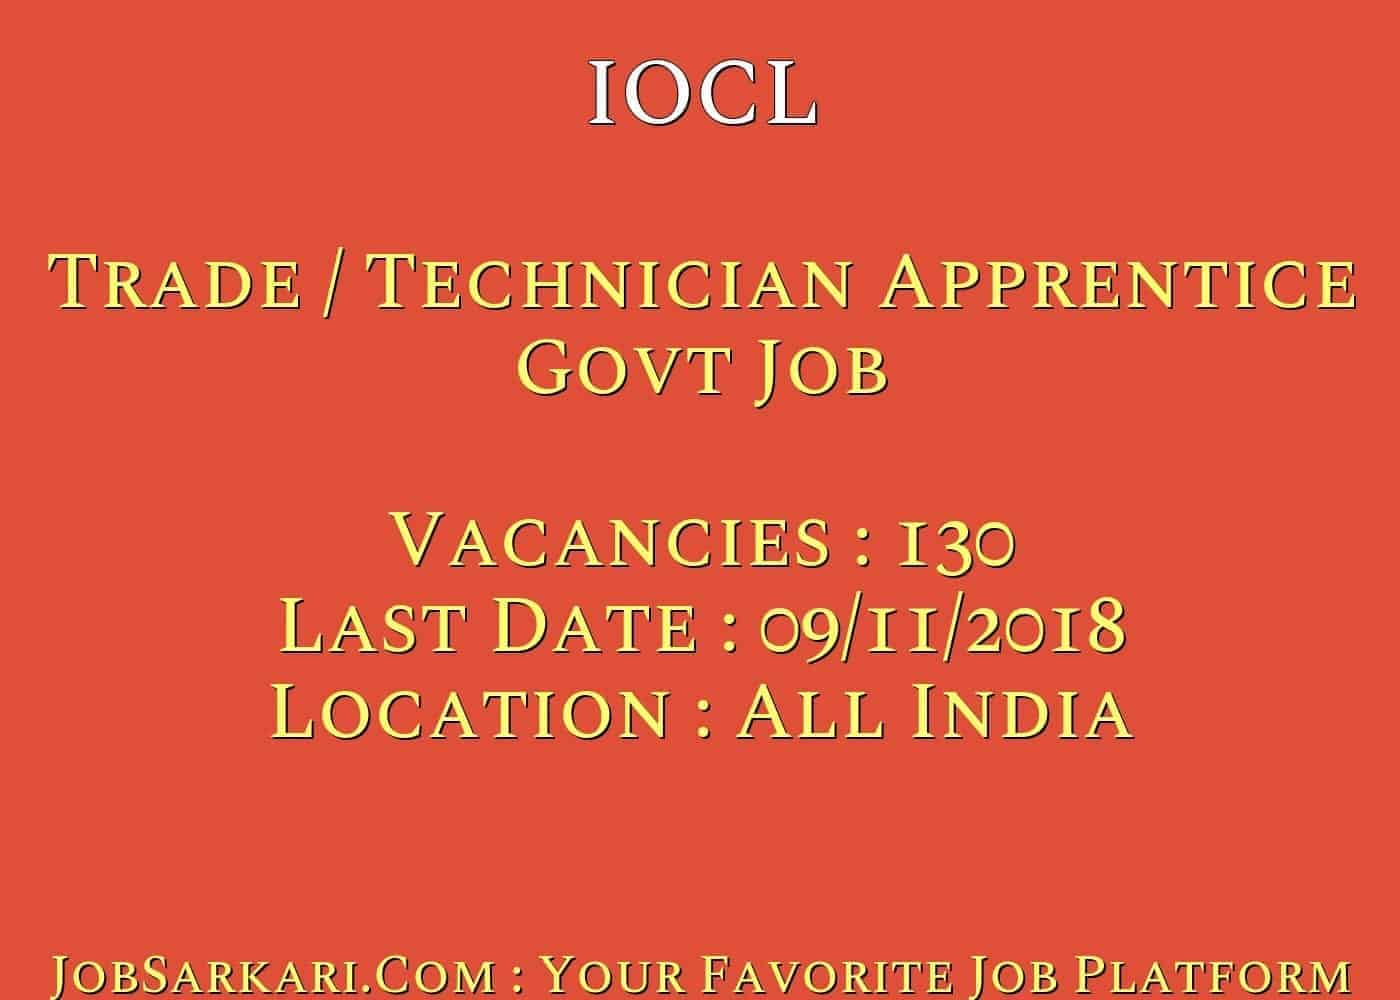 IOCL Recruitment 2018 for Trade / Technician Apprentice Govt Job